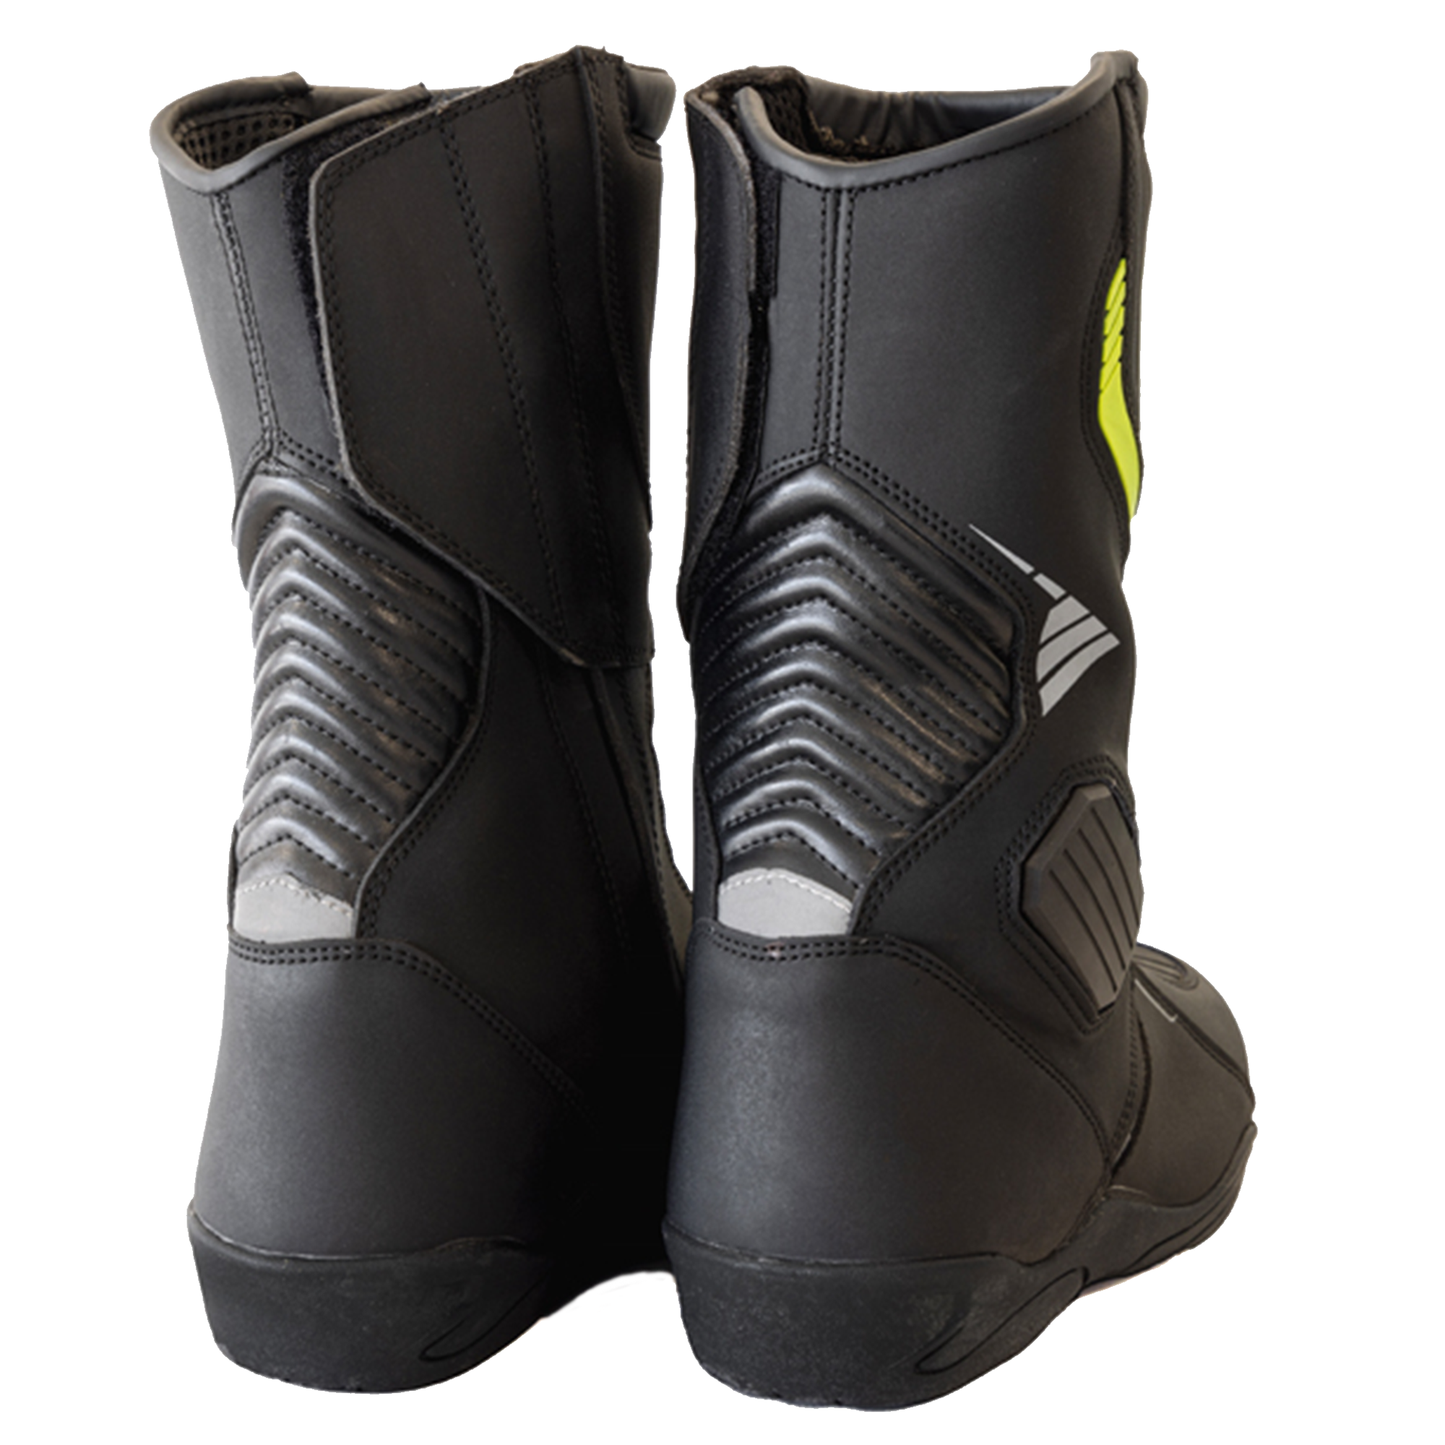 Richa Vortex Boots - Black